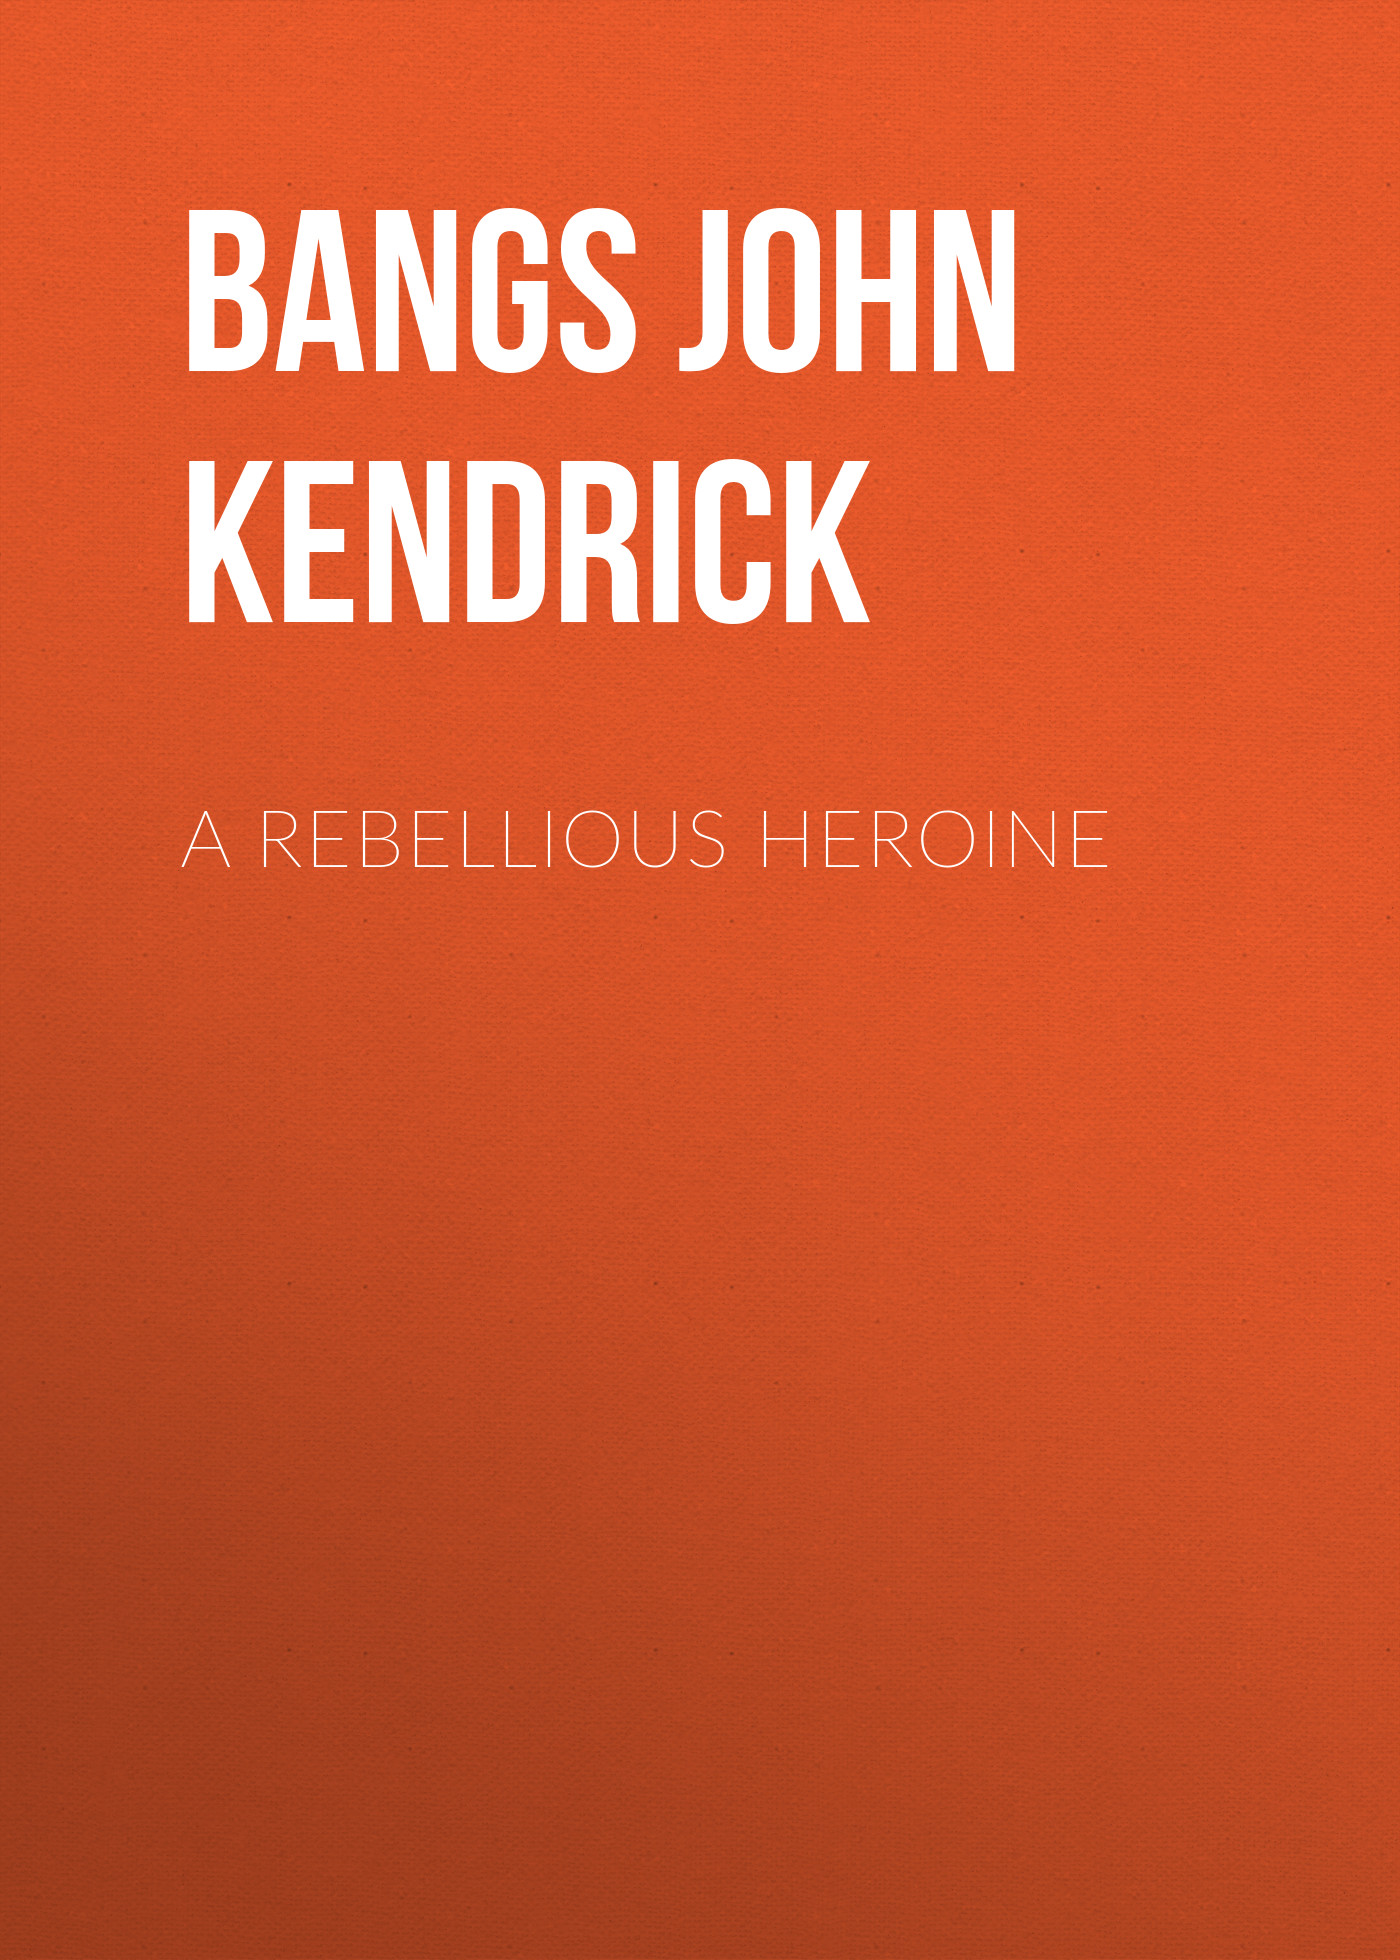 Книга A Rebellious Heroine из серии , созданная John Bangs, может относится к жанру Зарубежная классика, Зарубежная старинная литература. Стоимость электронной книги A Rebellious Heroine с идентификатором 36364974 составляет 0 руб.